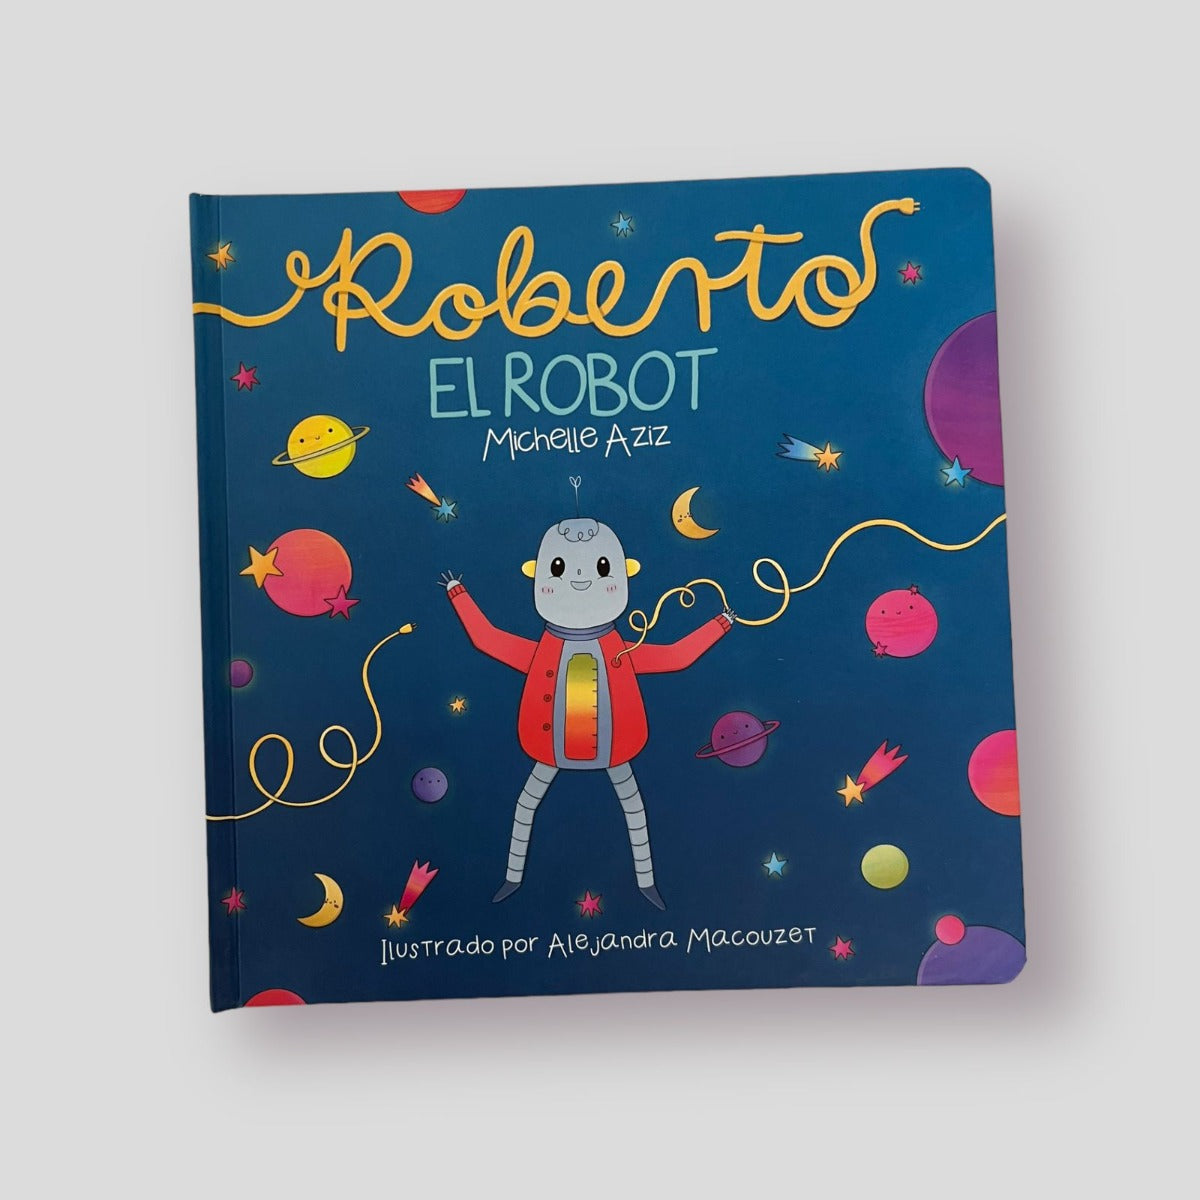 Roberto El Robot